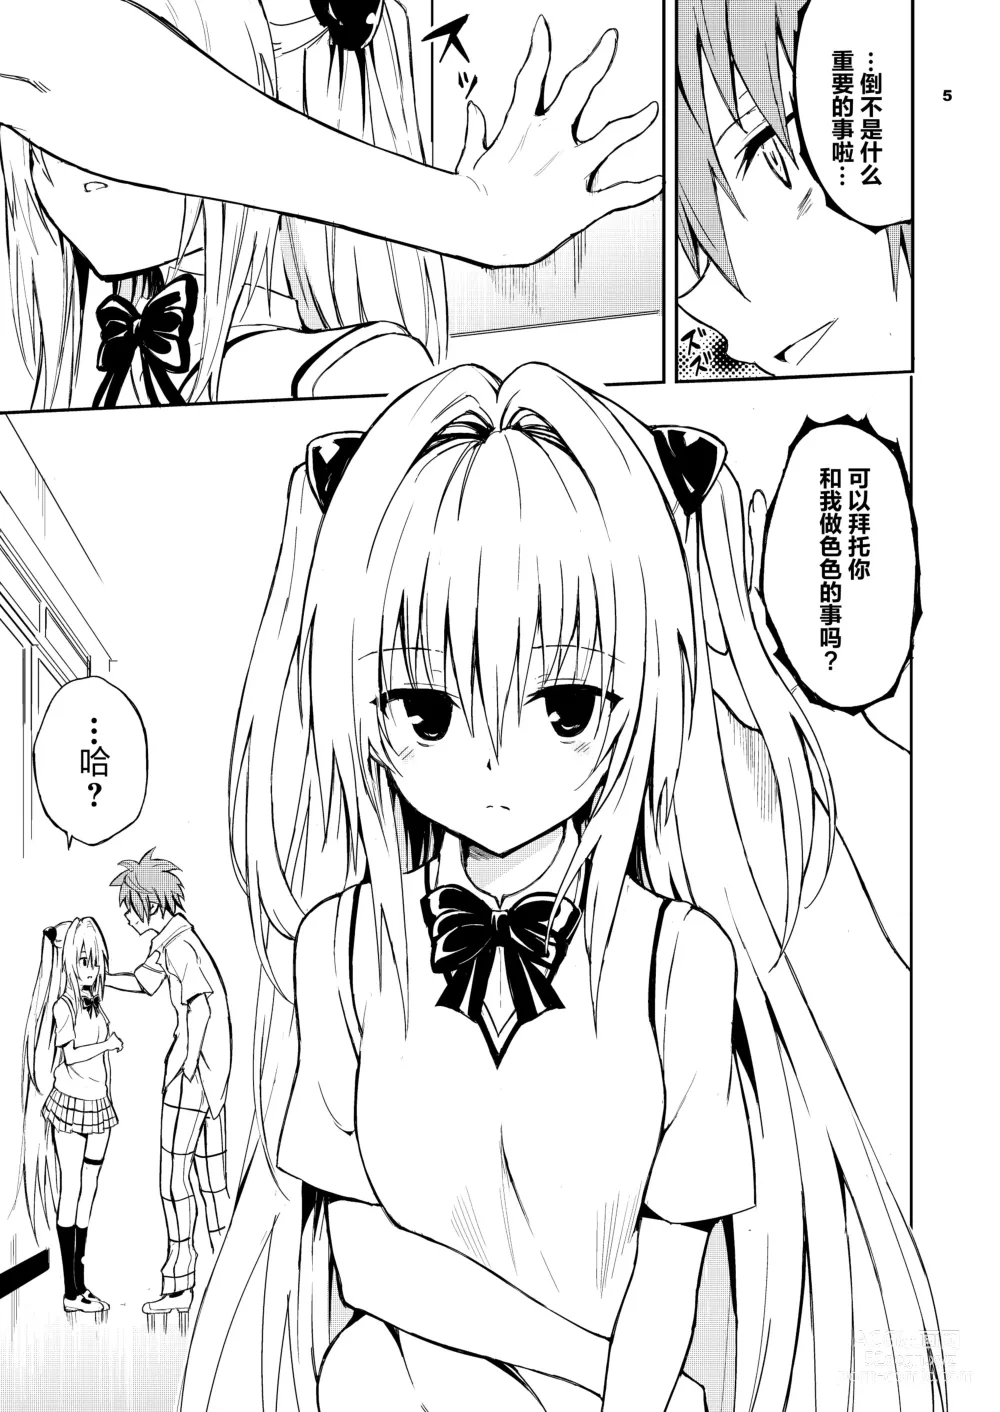 Page 6 of doujinshi Ecchii no wa Kirai desu ka?